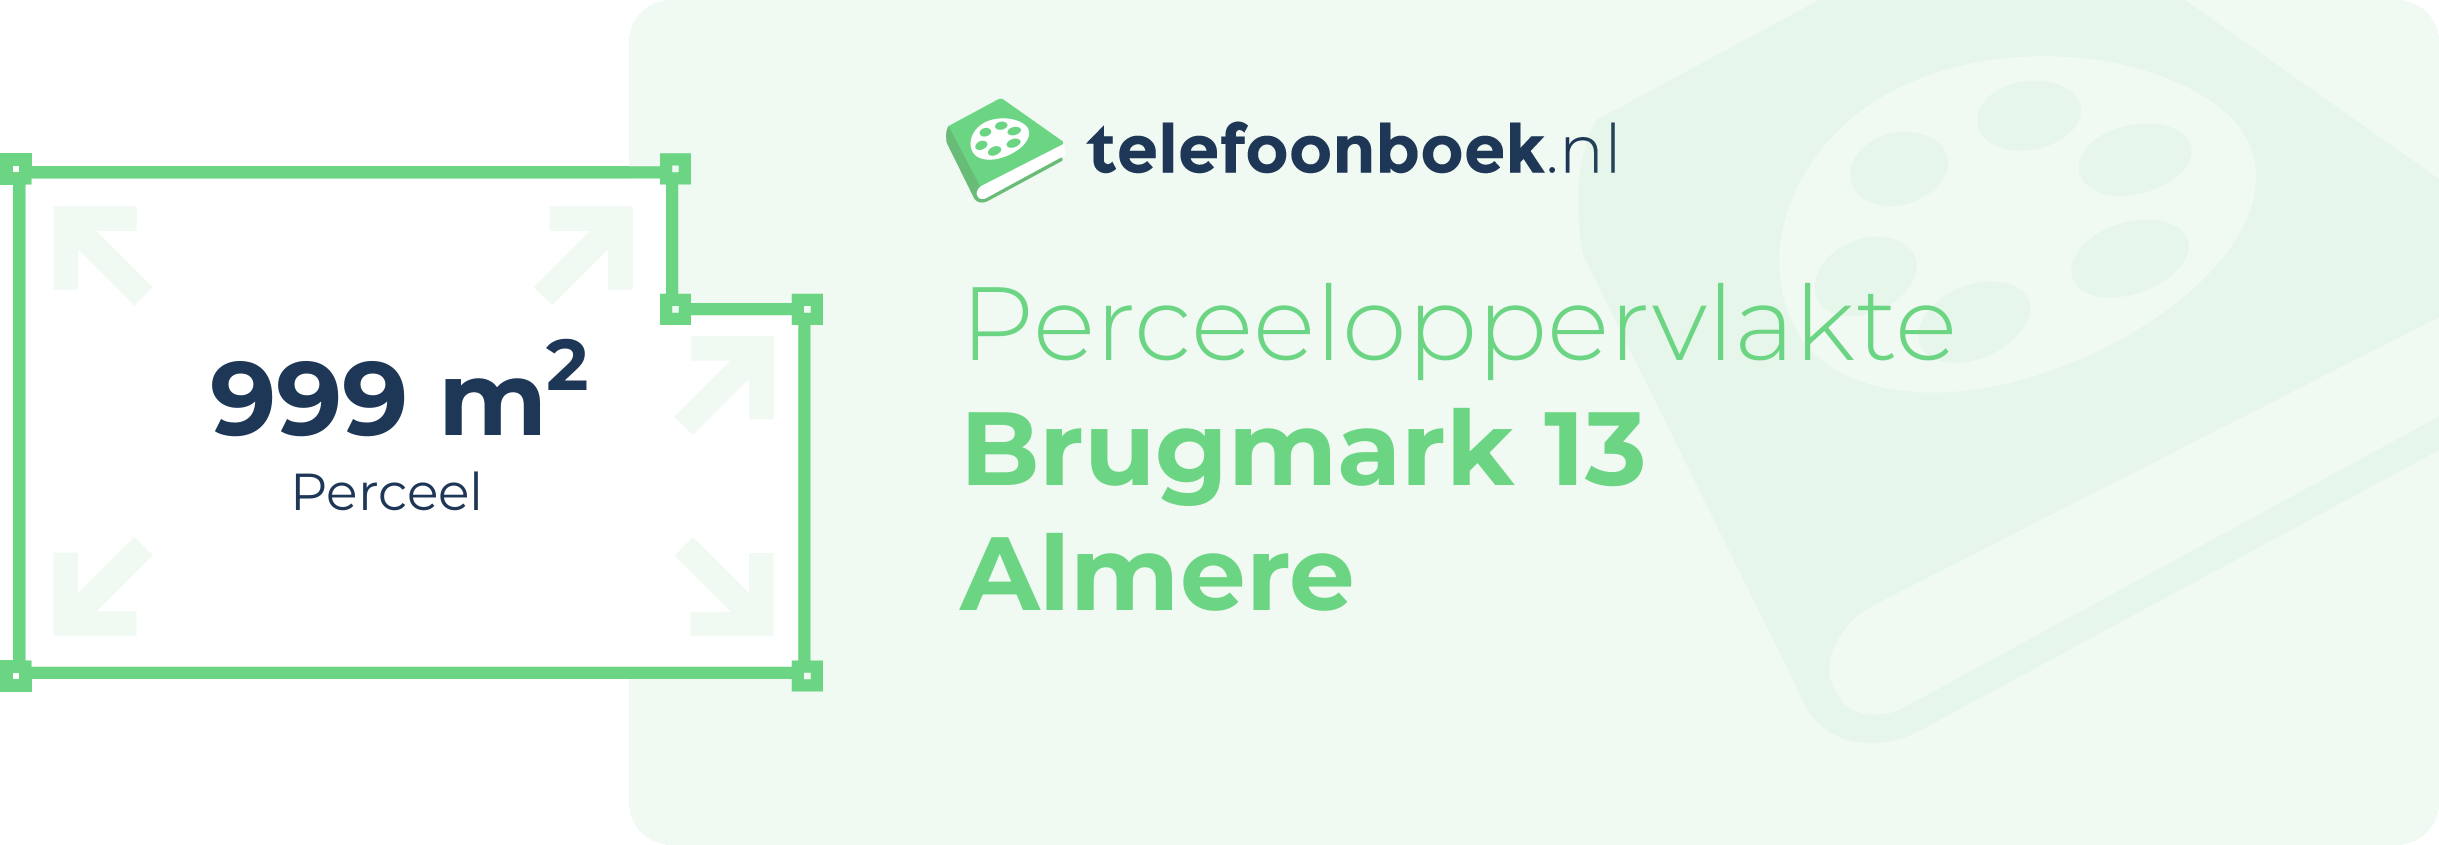 Perceeloppervlakte Brugmark 13 Almere